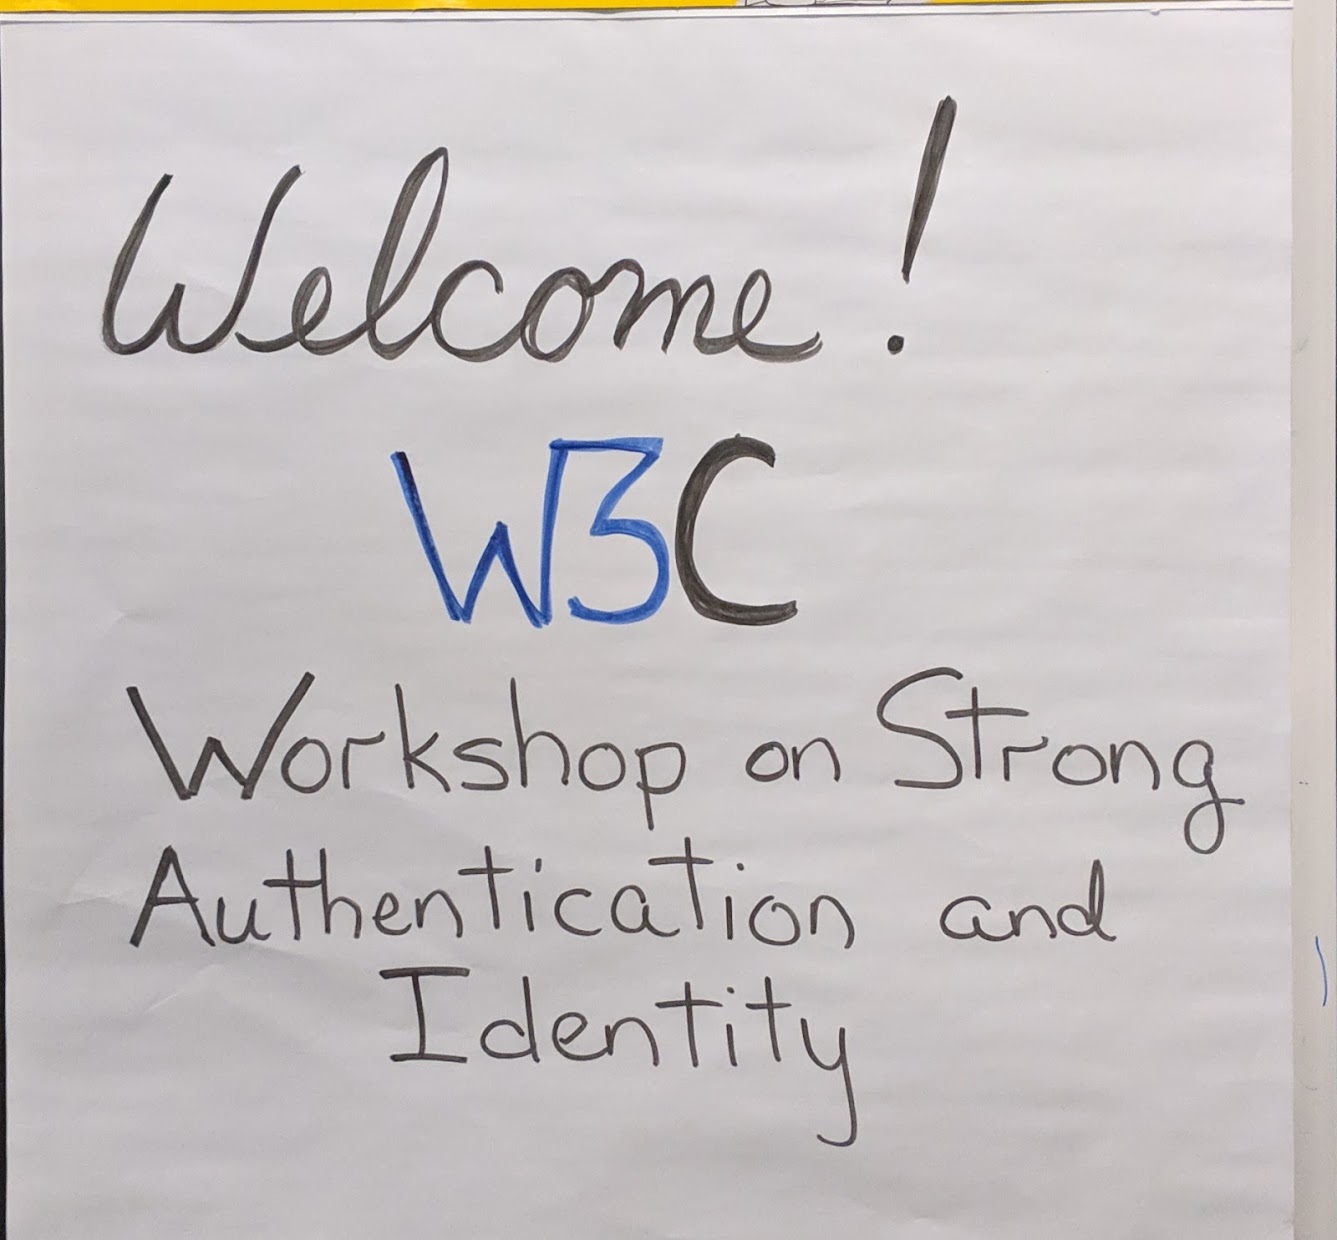 W3C opublikował dzisiaj   raport   z   Warsztaty W3C na temat silnego uwierzytelniania i tożsamości   , która odbyła się w dniach 10-11 grudnia 2018 r